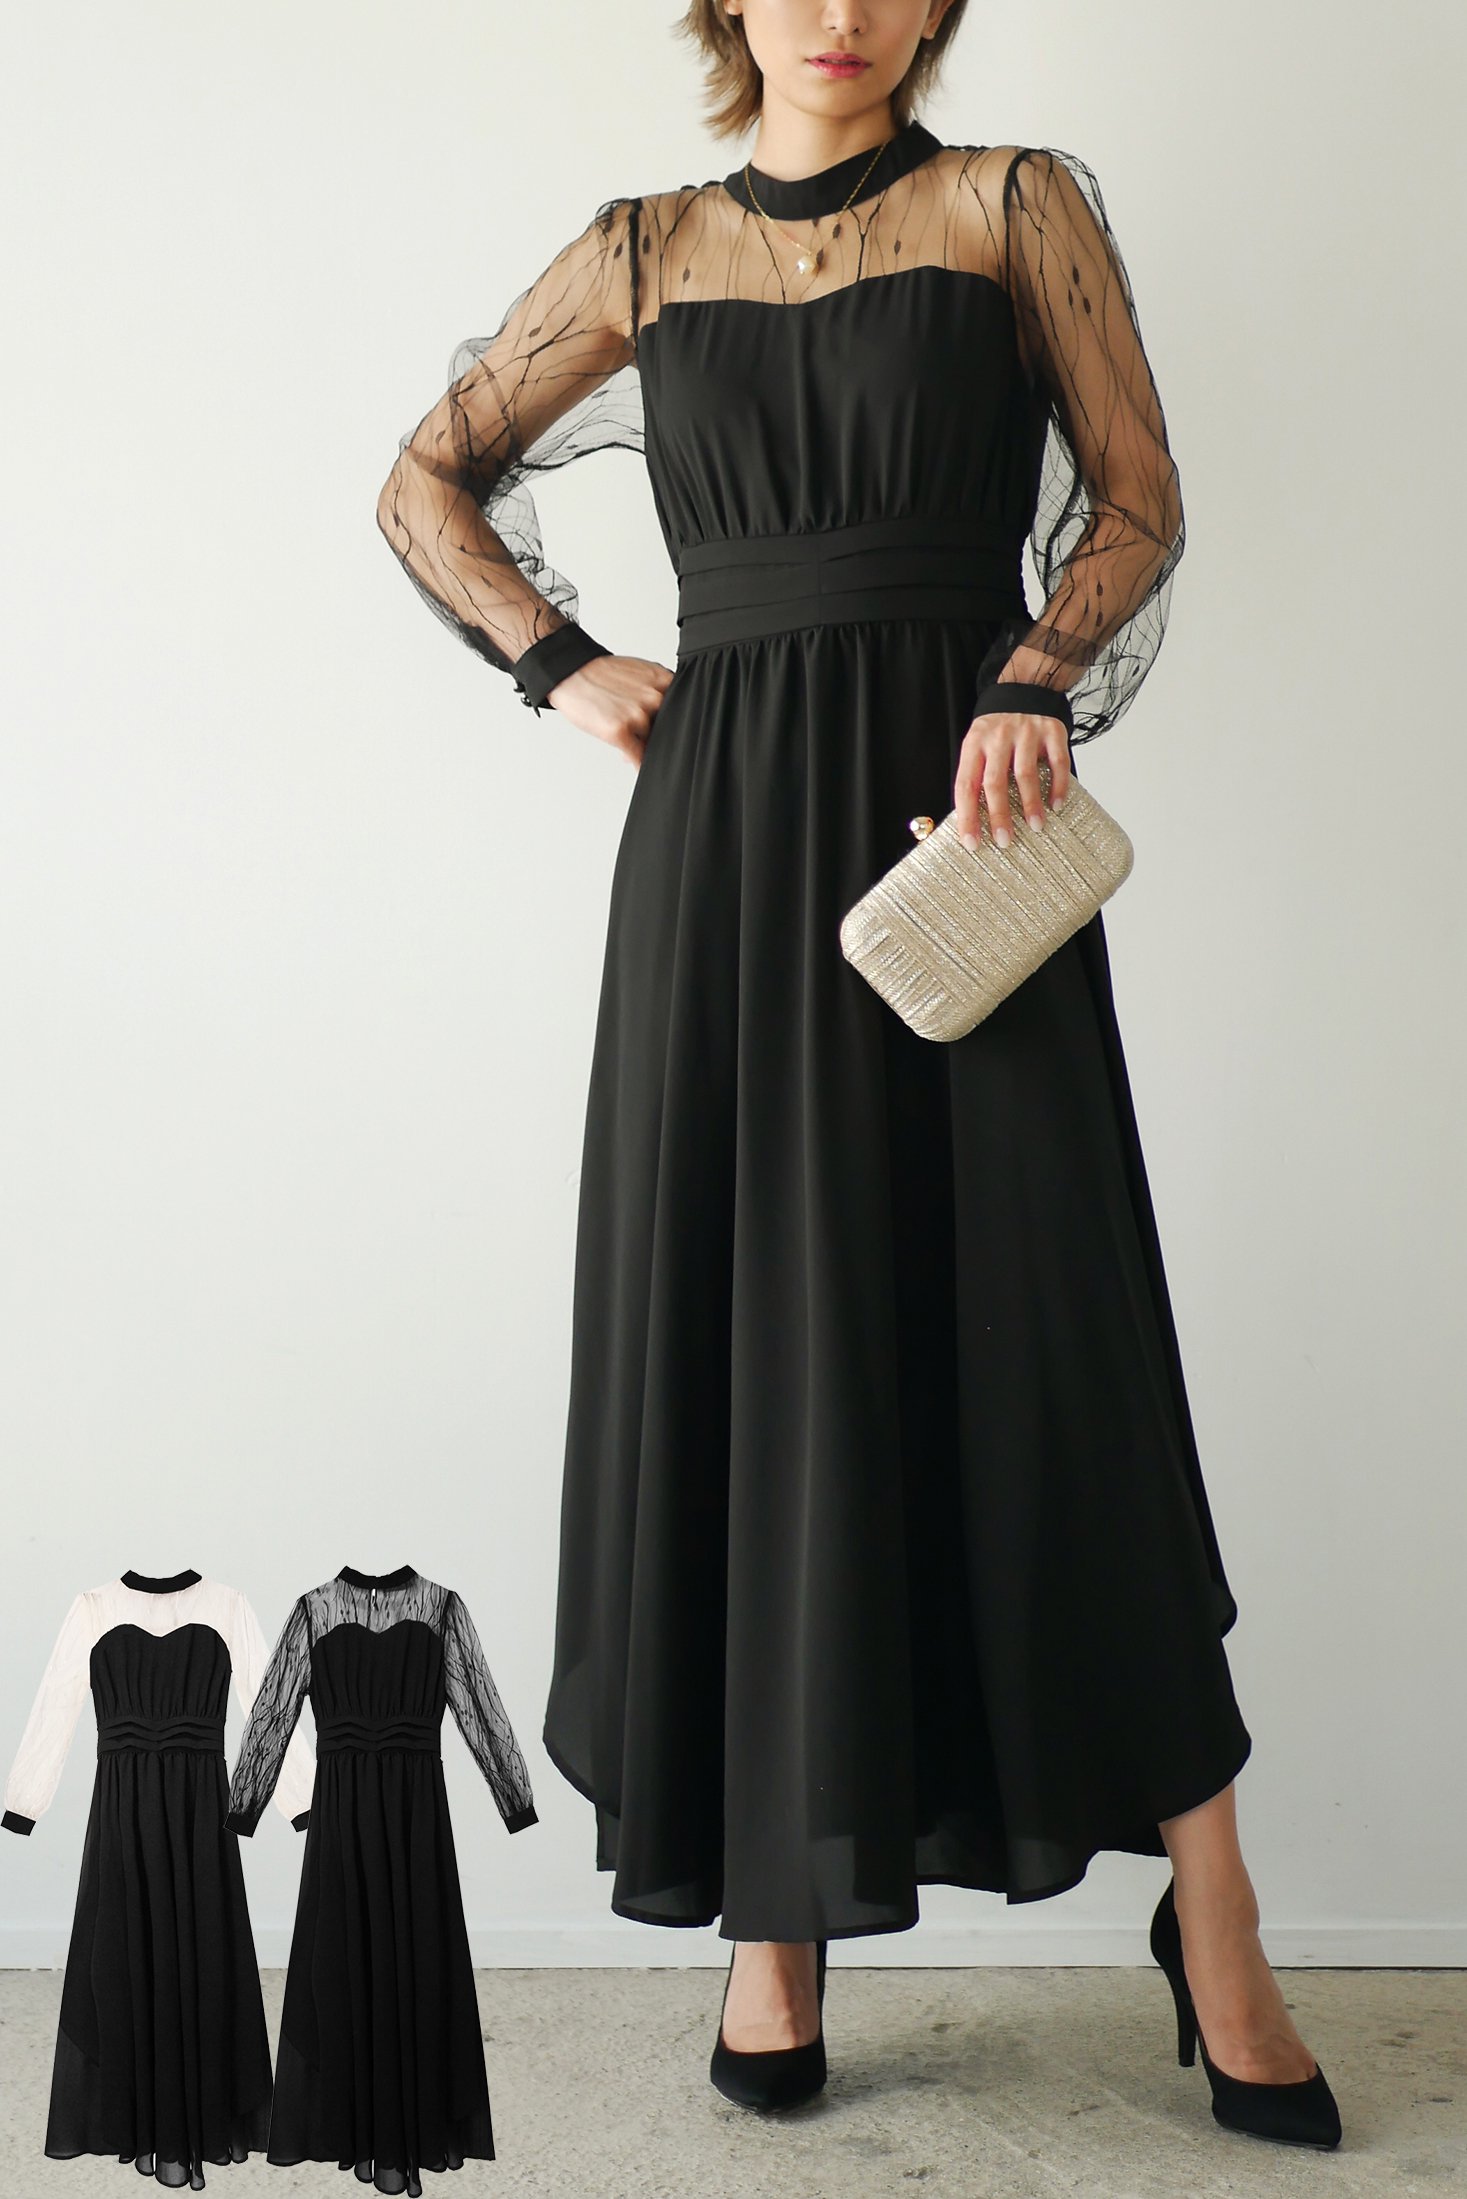 layla day dress - Myshawty公式ドレス通販サイト